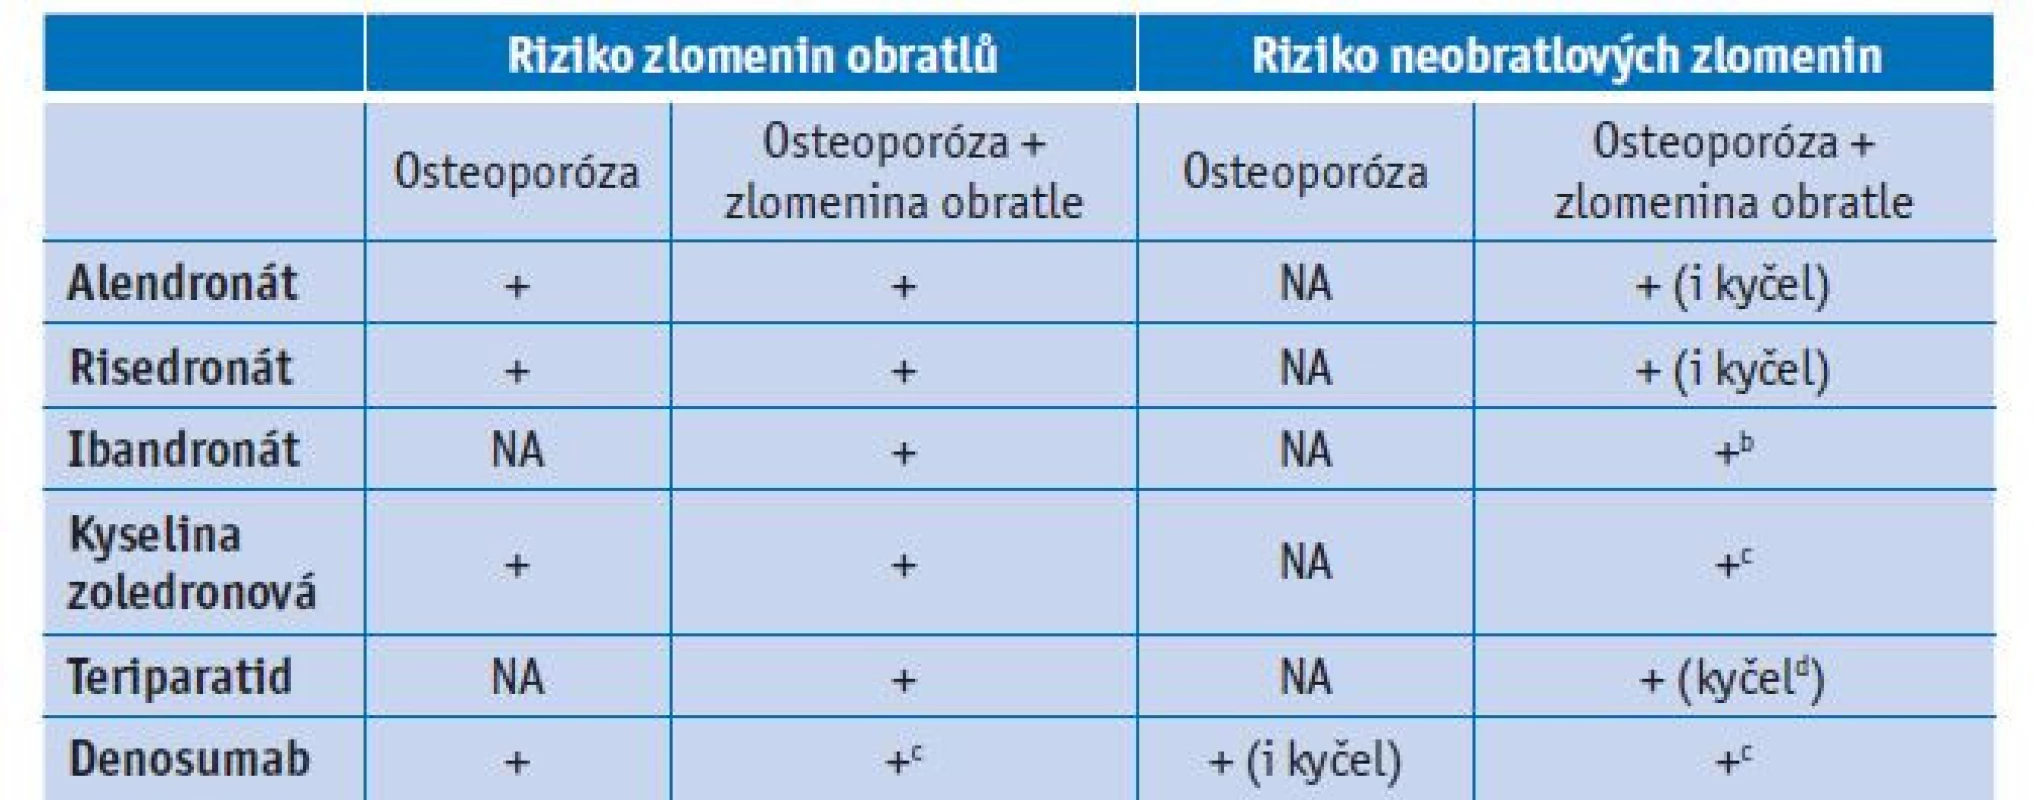 Účinnost léčby (snížení rizika zlomenin podle rtg) u postmenopauzálních žen s osteoporózou